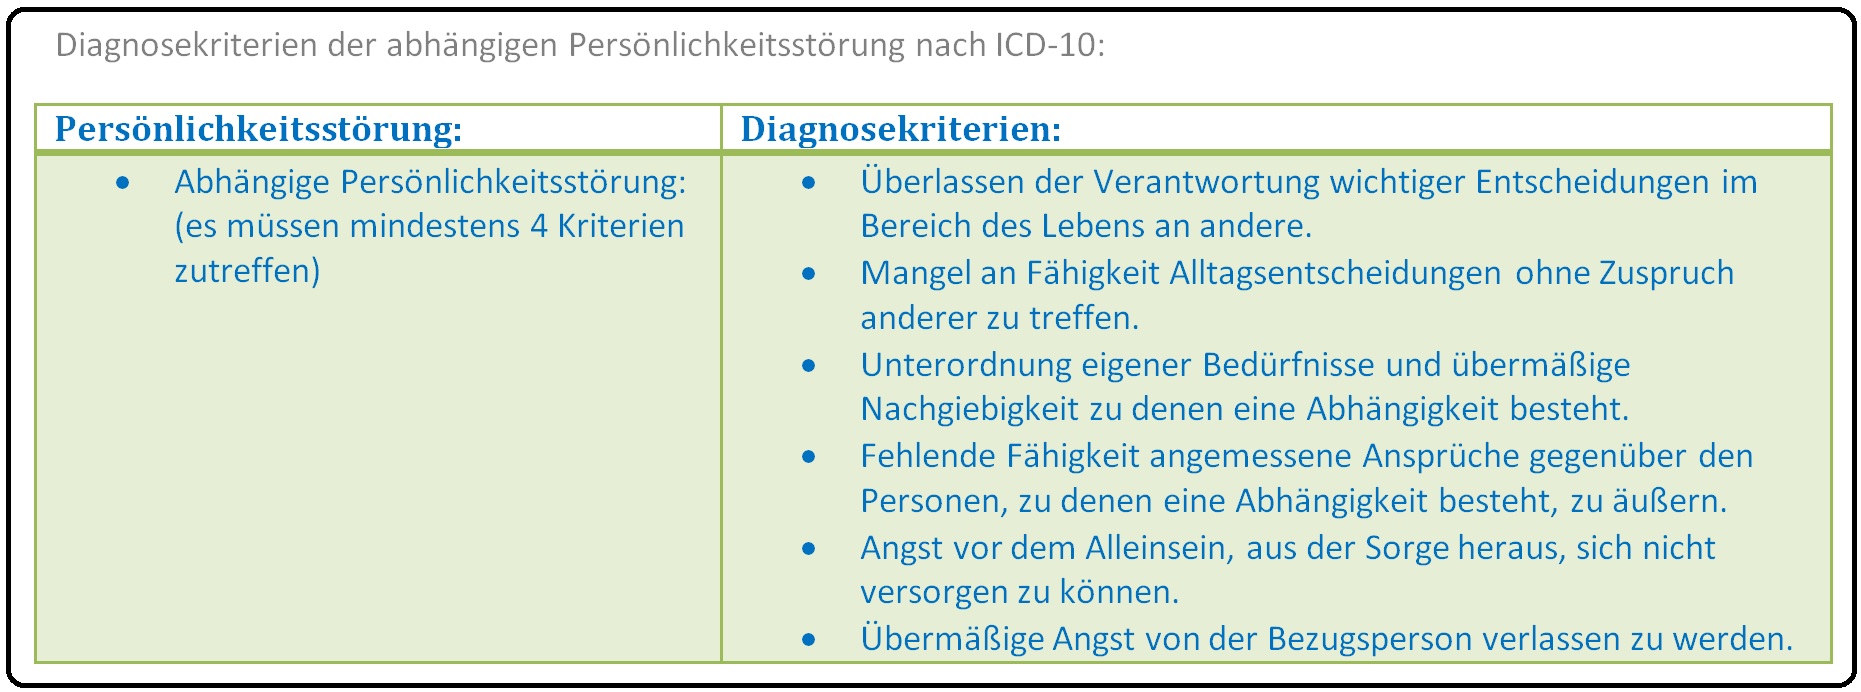 639 DIagnosekriterien der abhängigen Persönlichkeitsstörung nach ICD 10